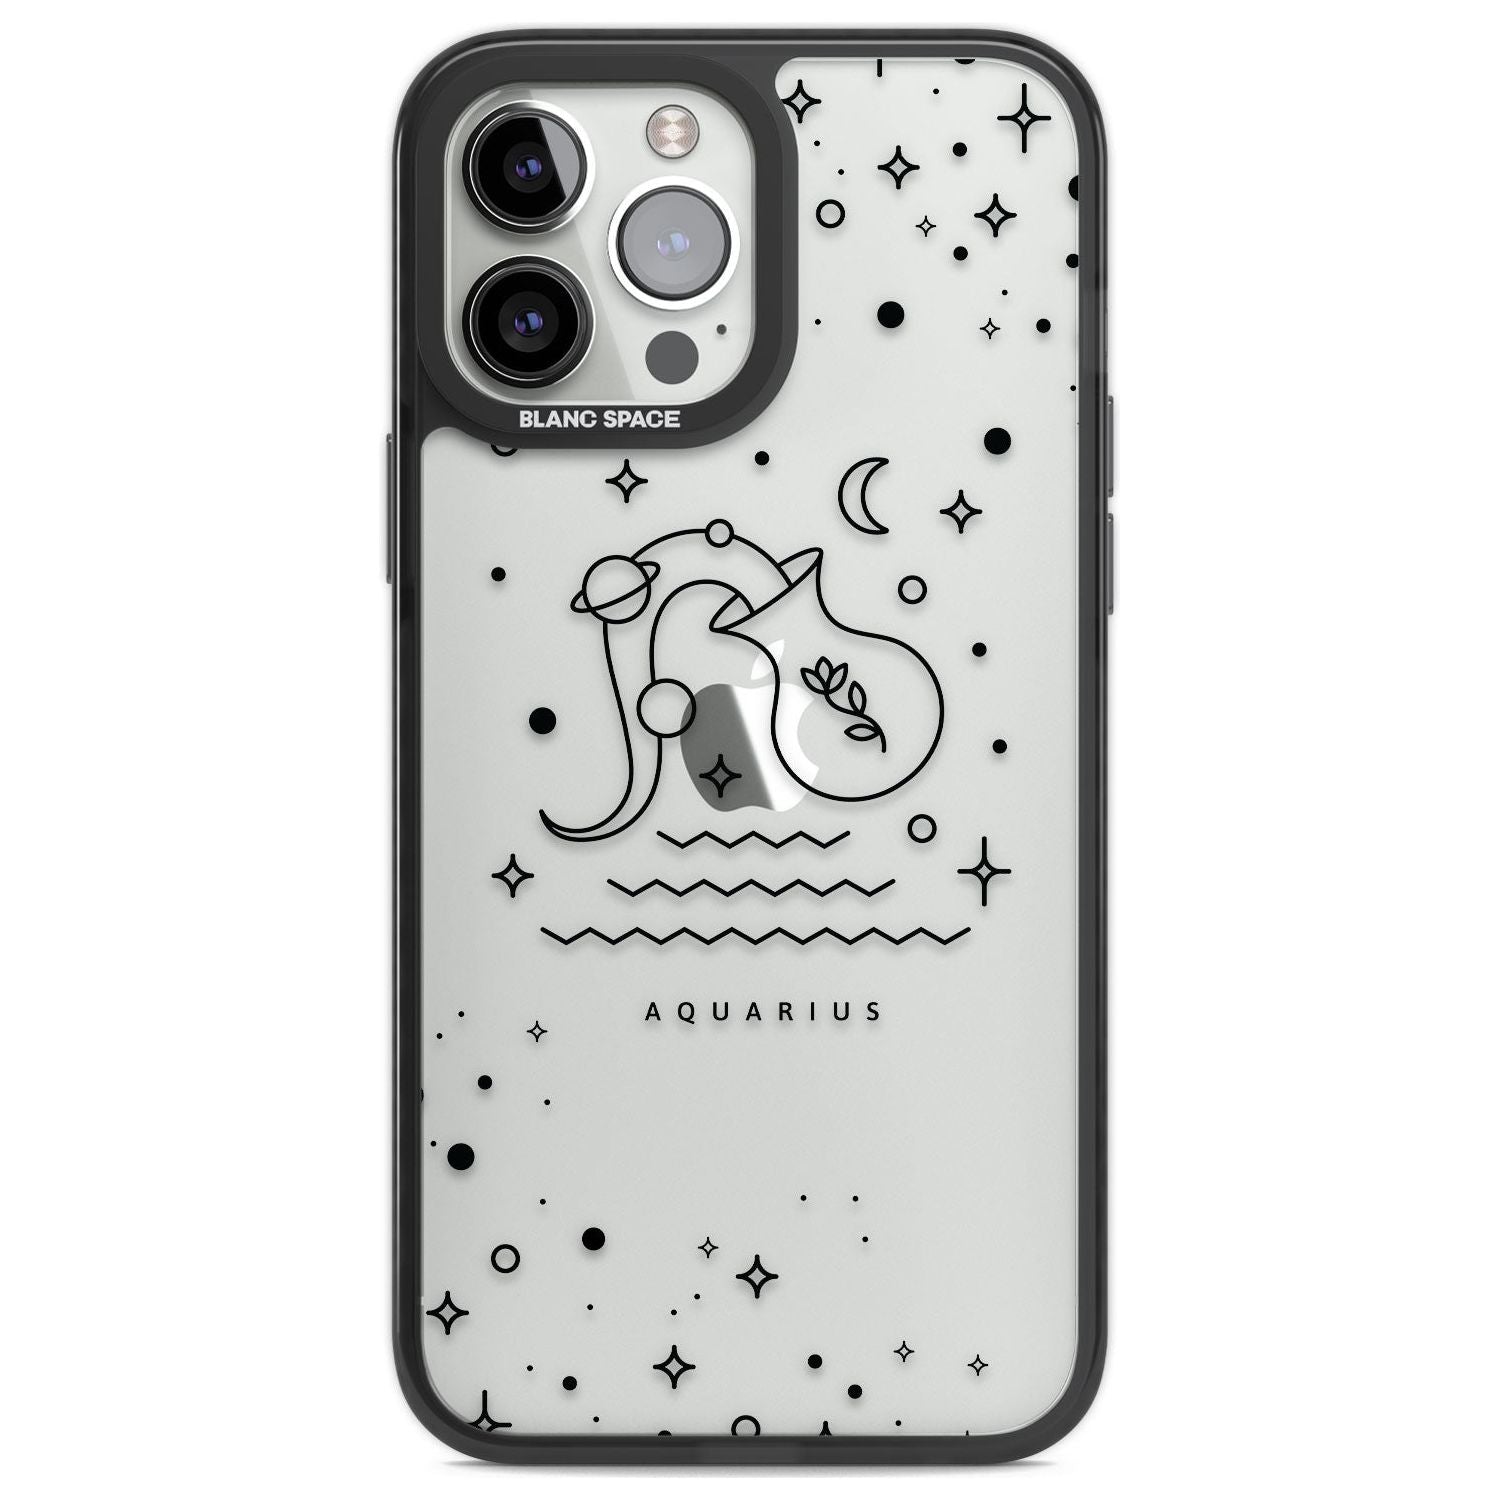 Aquarius Emblem - Transparent Design Phone Case iPhone 13 Pro Max / Black Impact Case,iPhone 14 Pro Max / Black Impact Case Blanc Space